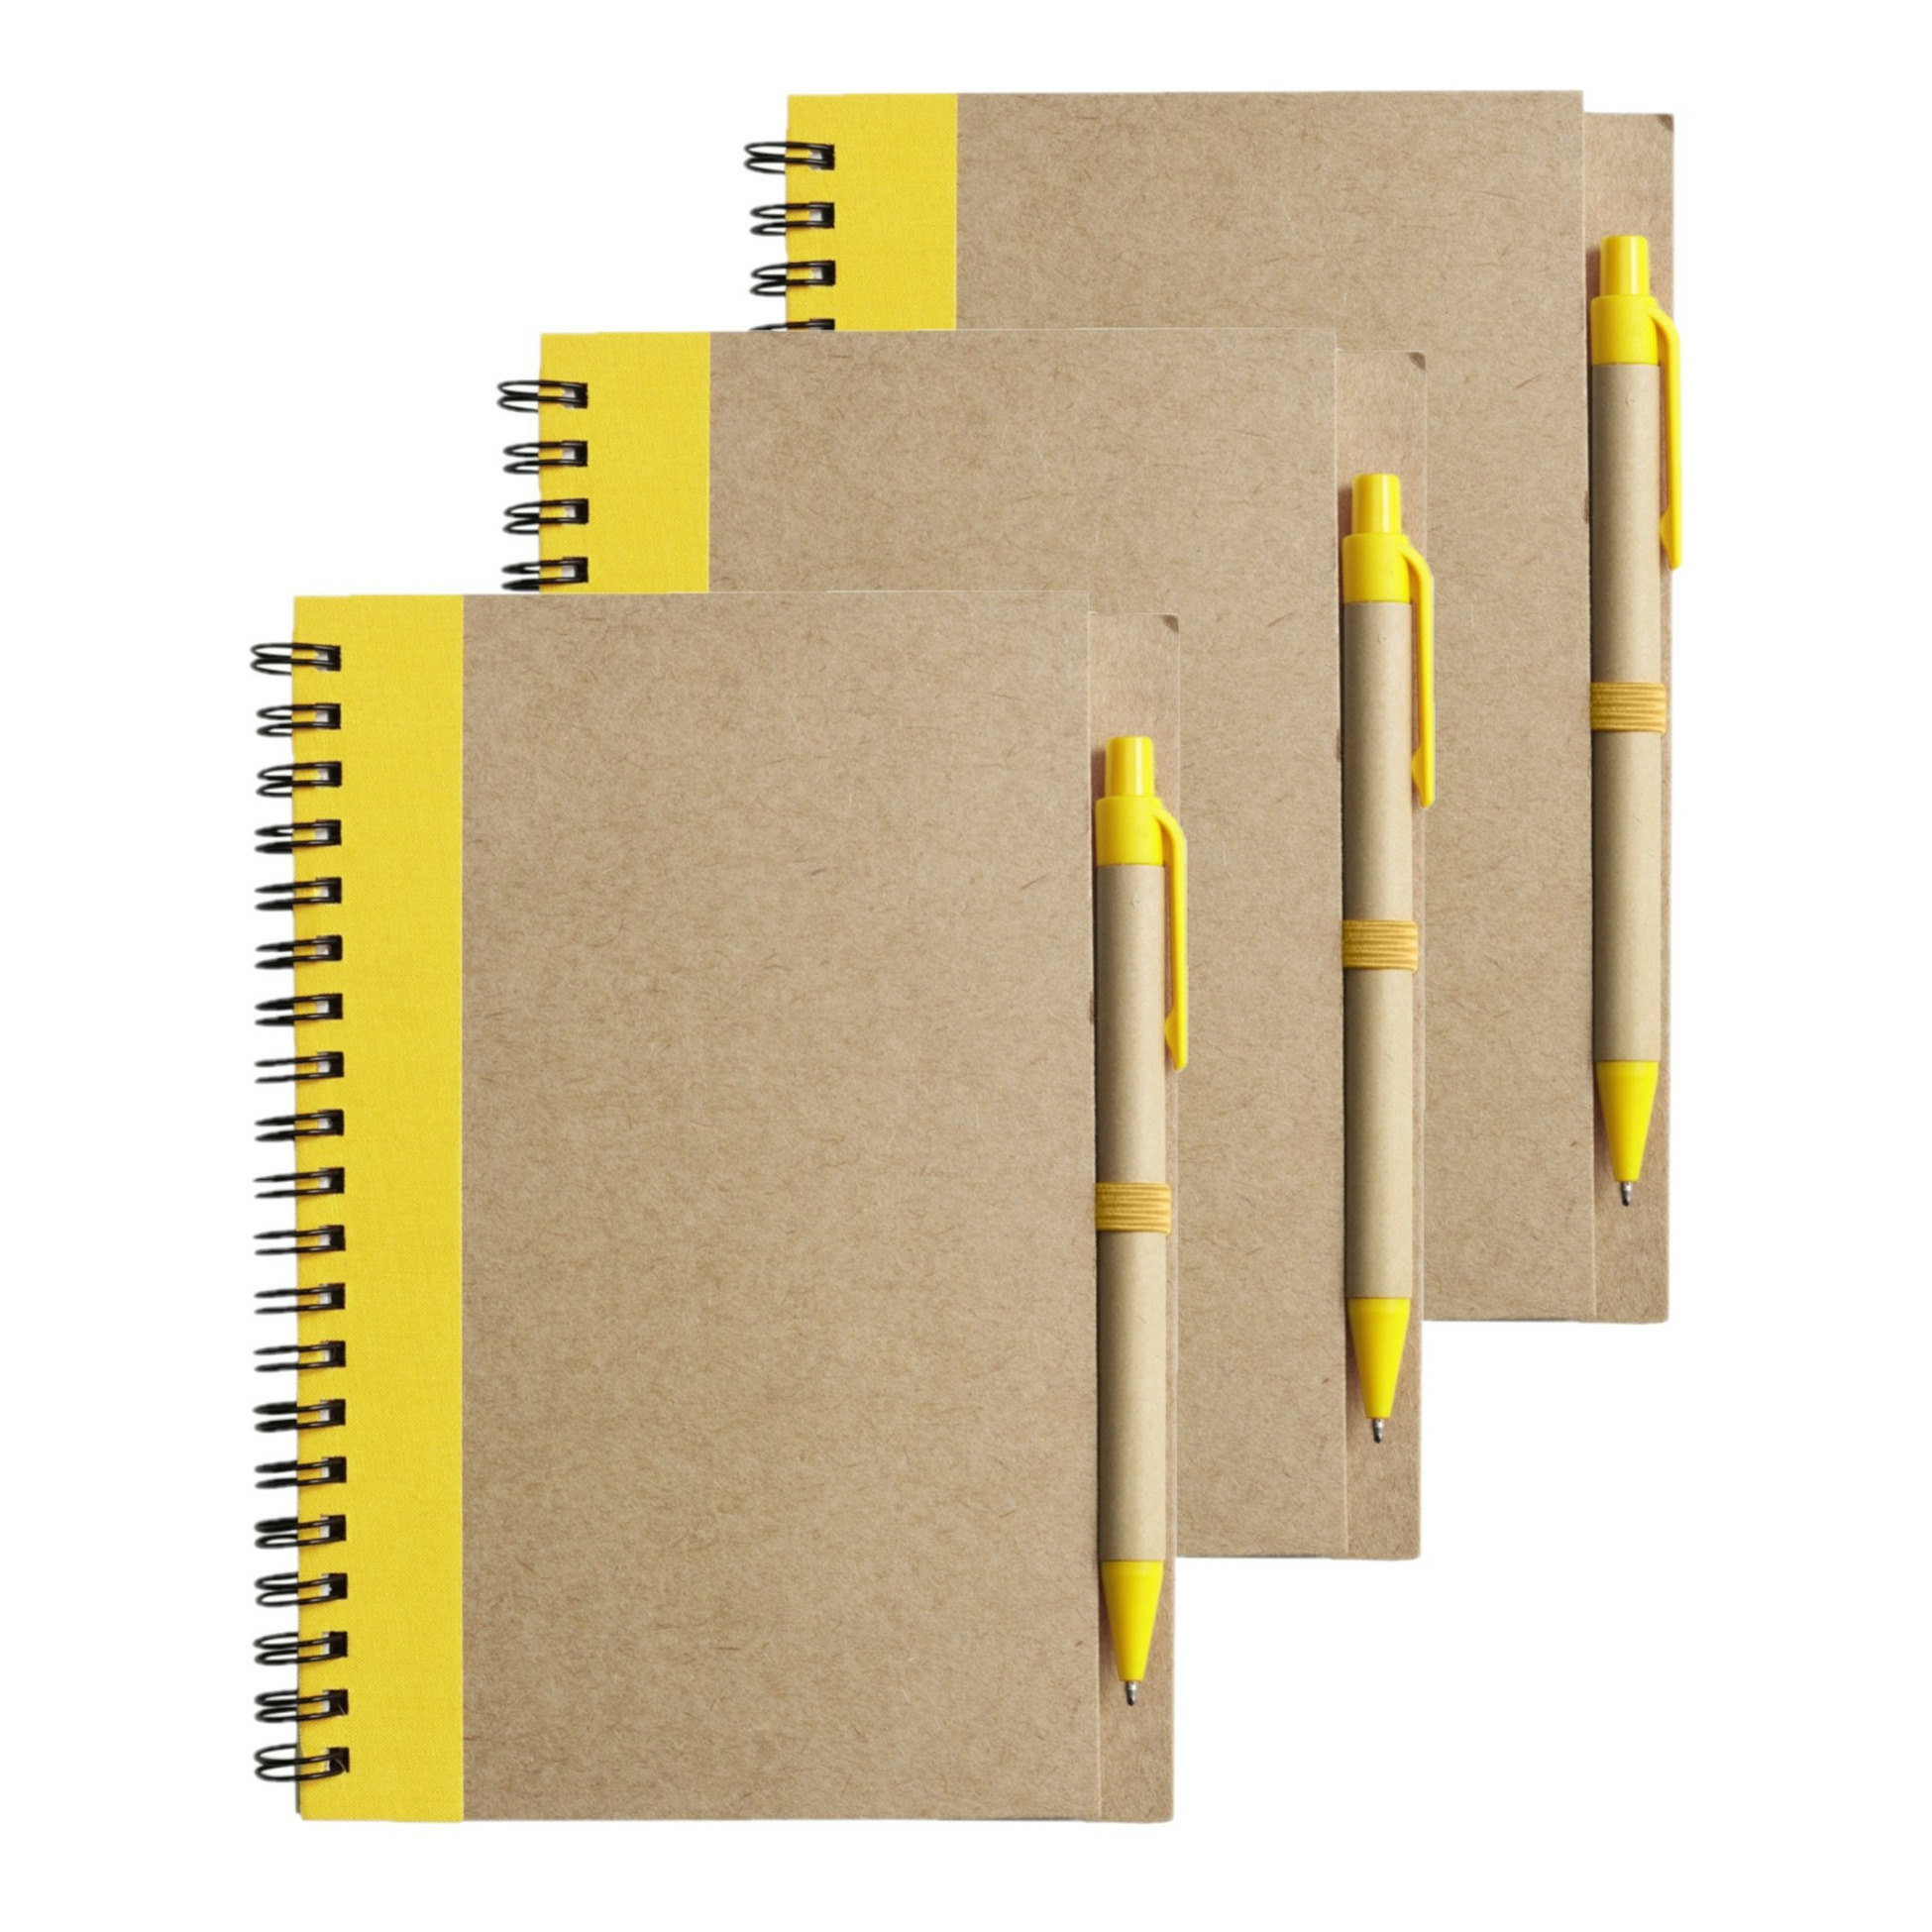 Notitie-opschrijf boekje met balpen 6x harde kaft beige-geel 18x13cm 60blz gelinieerd